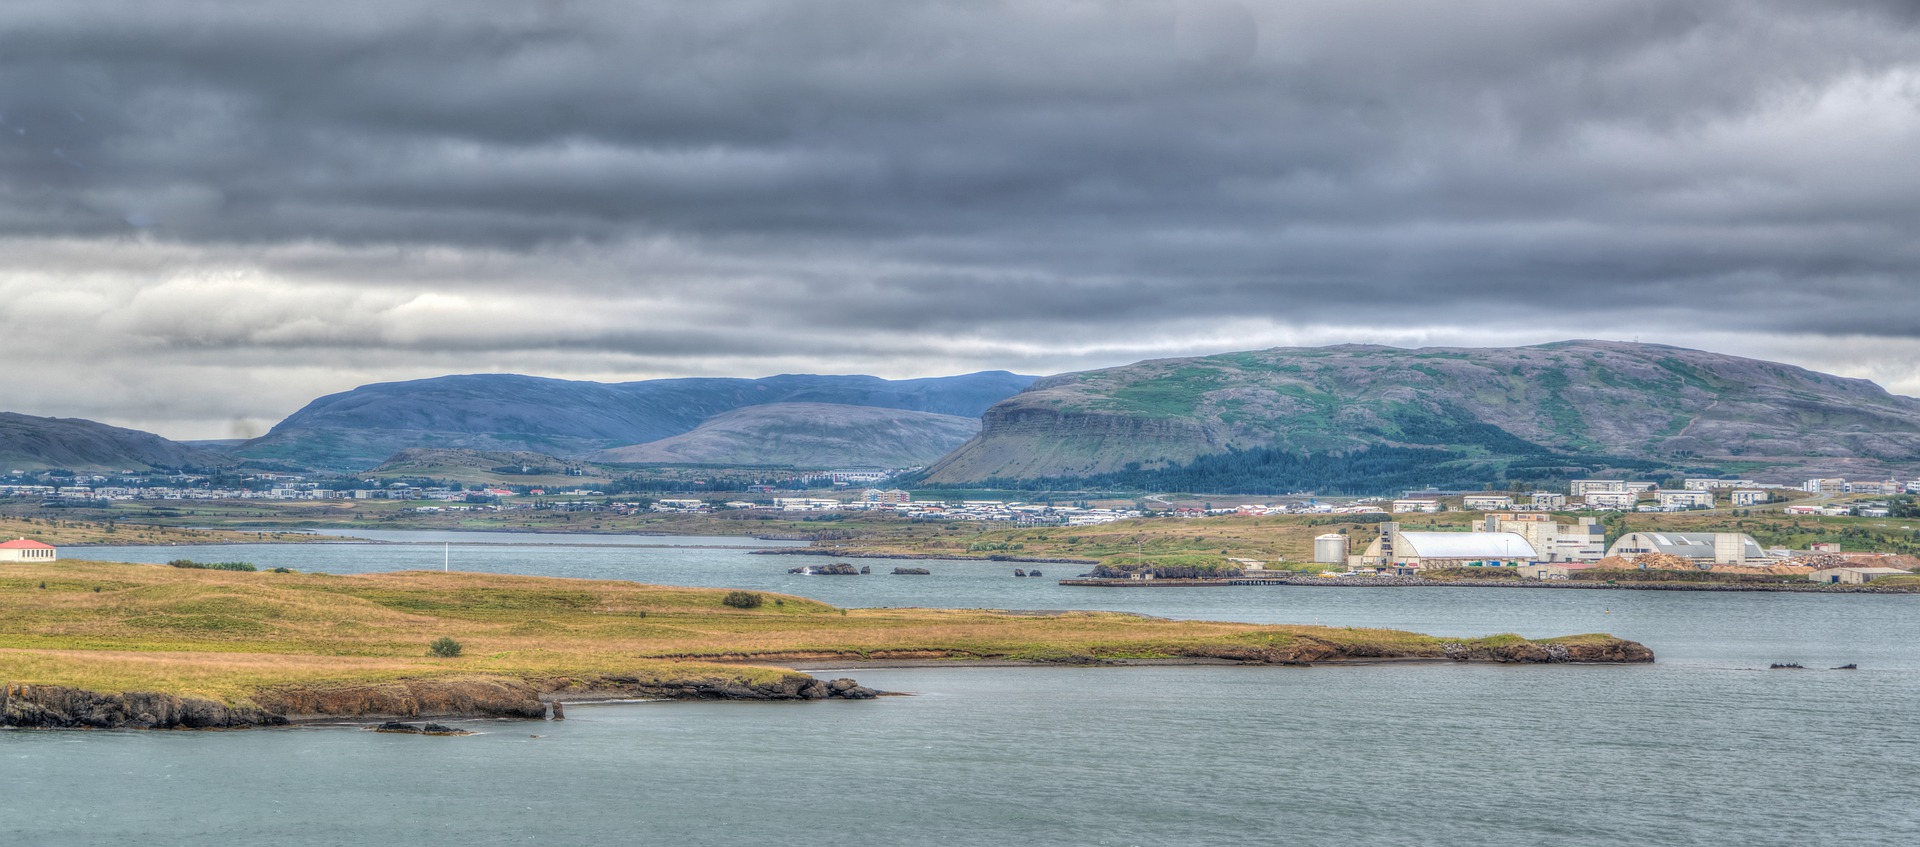 В Исландии ждут восстановления турпотока в 2020 году после провала в 2019-м